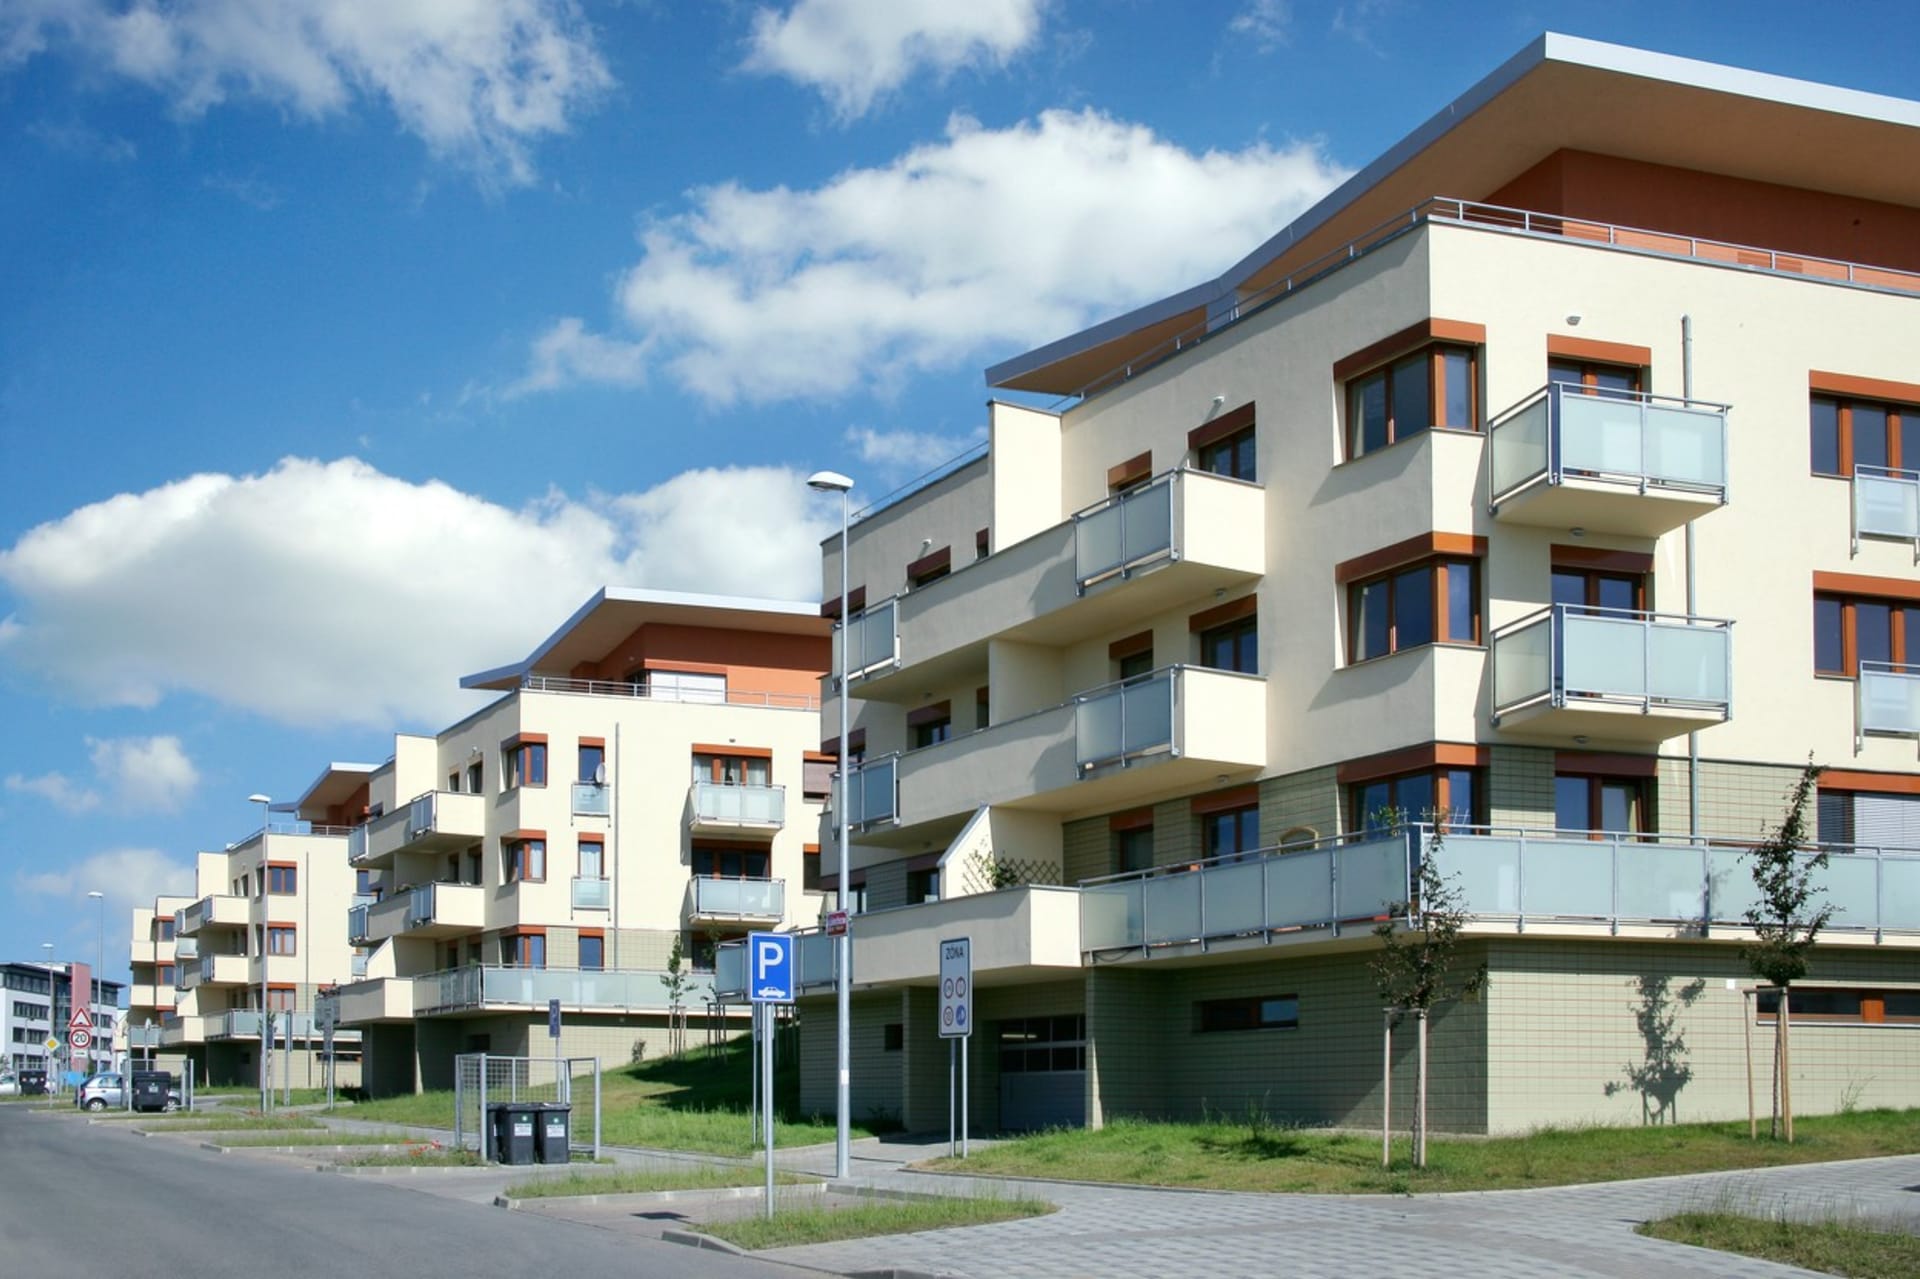 Ceny bytů letí stále vzhůru. Průměrná cena za metr čtvereční už v Praze prolomila hranici 100 tisíc korun.